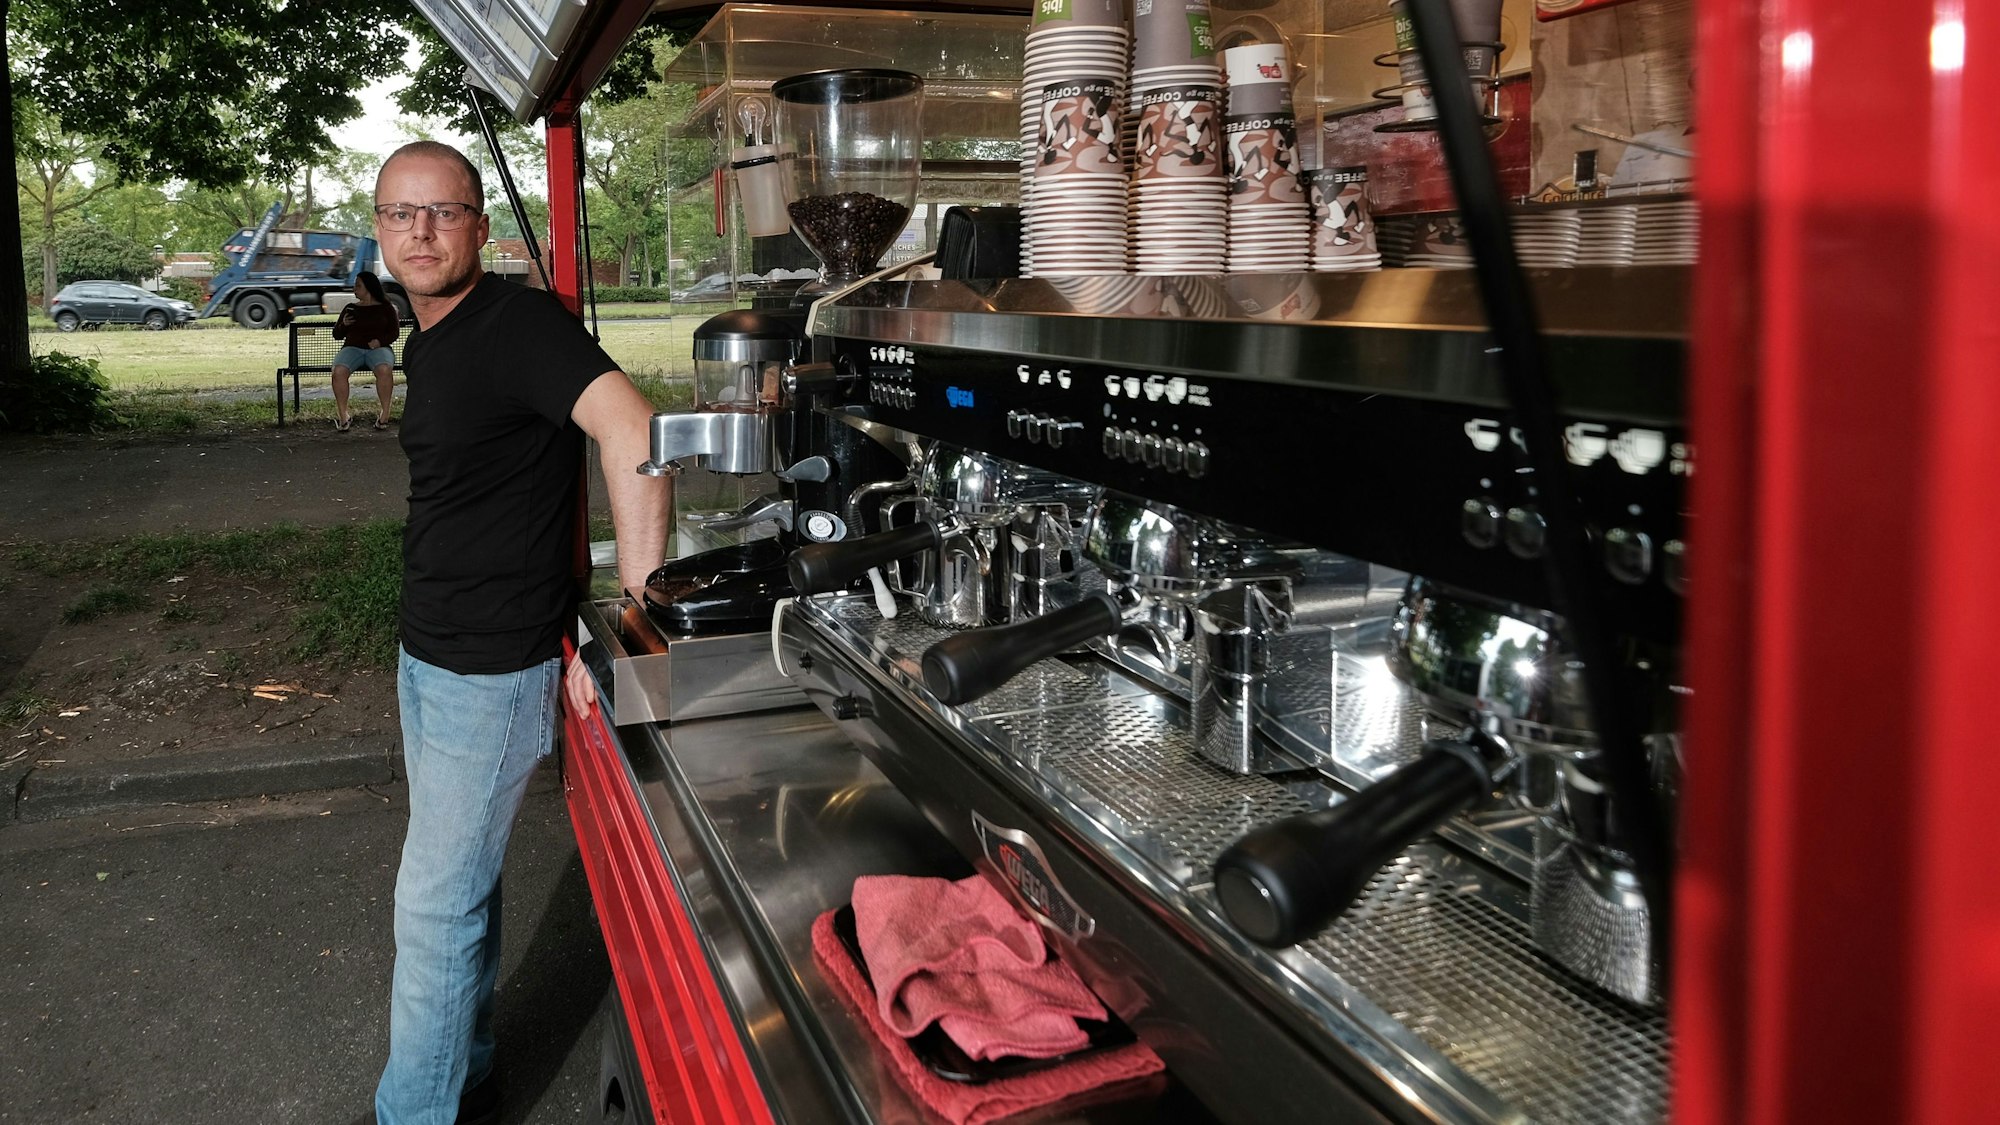 Roberto Mirabile steht vor seinem geöffneten Caféccino-Mobil, in dem er Kaffeespezialitäten und Gebäck anbietet. Zu sehen sind drei Siebträgermaschinen, die nebeneinander angebracht sind, im Hintergrund sind Behälter mit Kaffeebohnen sichtbar. Oberhalb der Kaffeemaschinen sind Pappbecher aufgereiht.